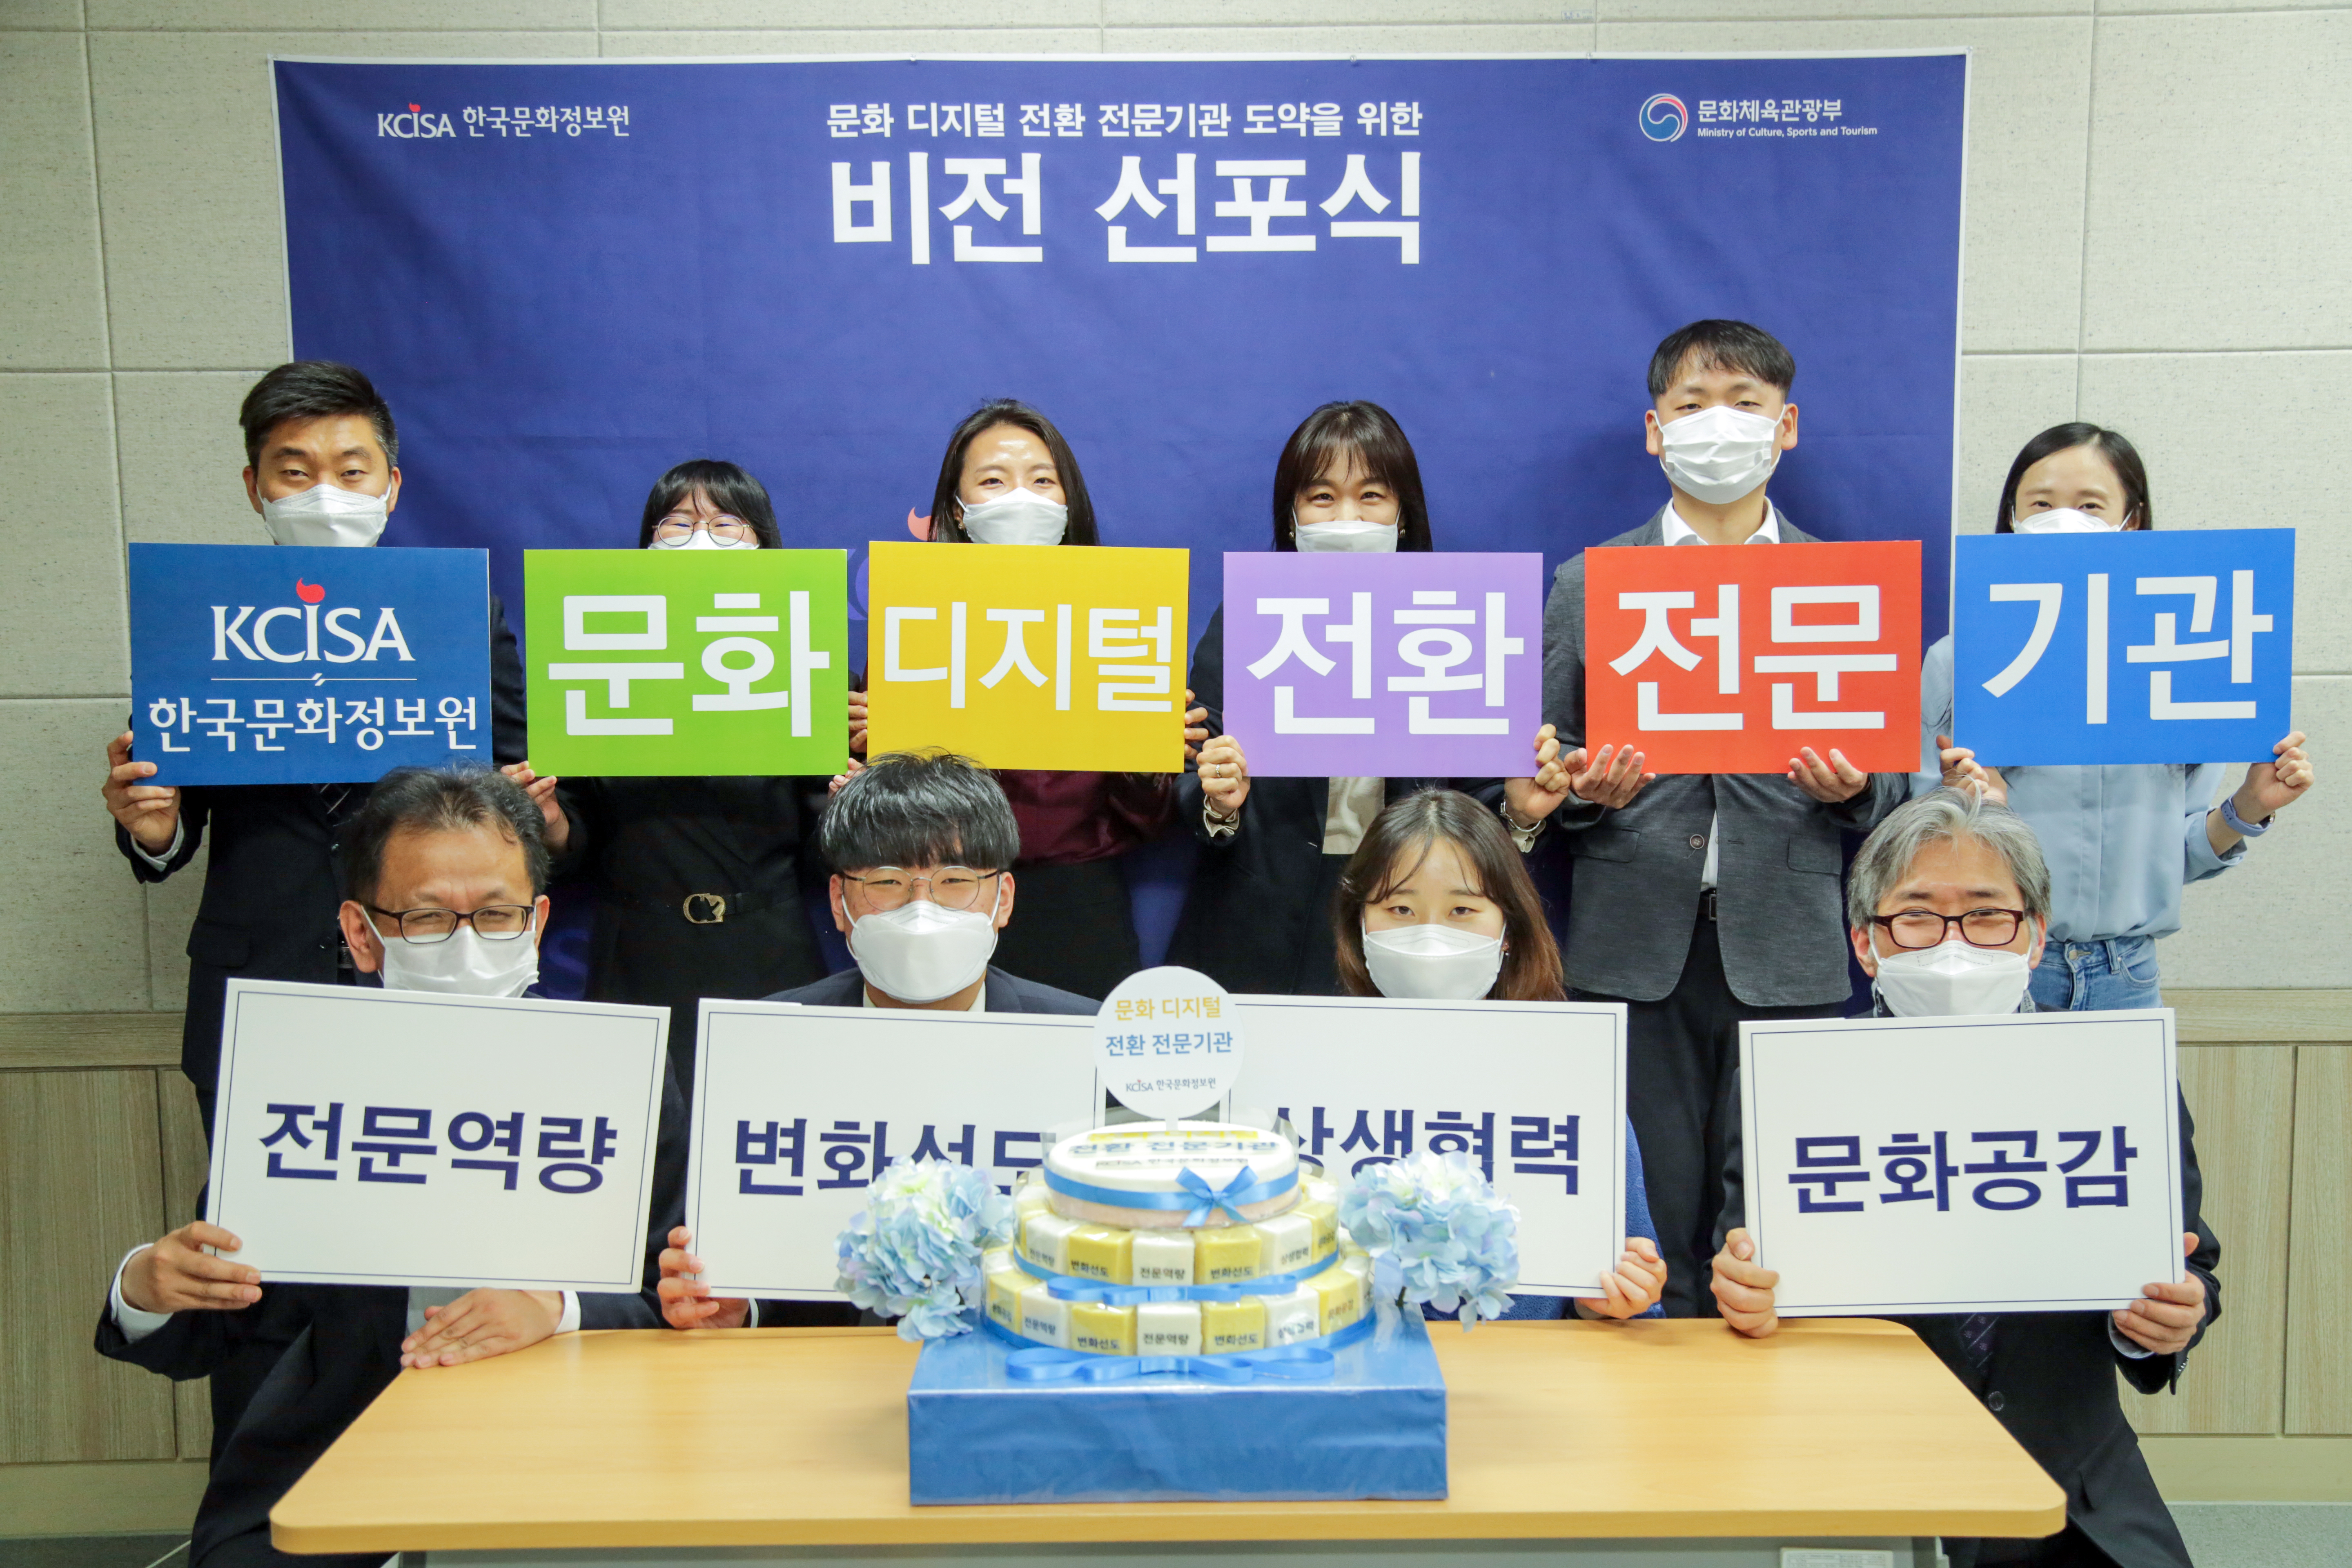 한국문화정보원 비전 선포식에 홍희경 원장과 임직원들이 비전과 핵심가치 문구 피켓을 들고 있는 사진이다. 